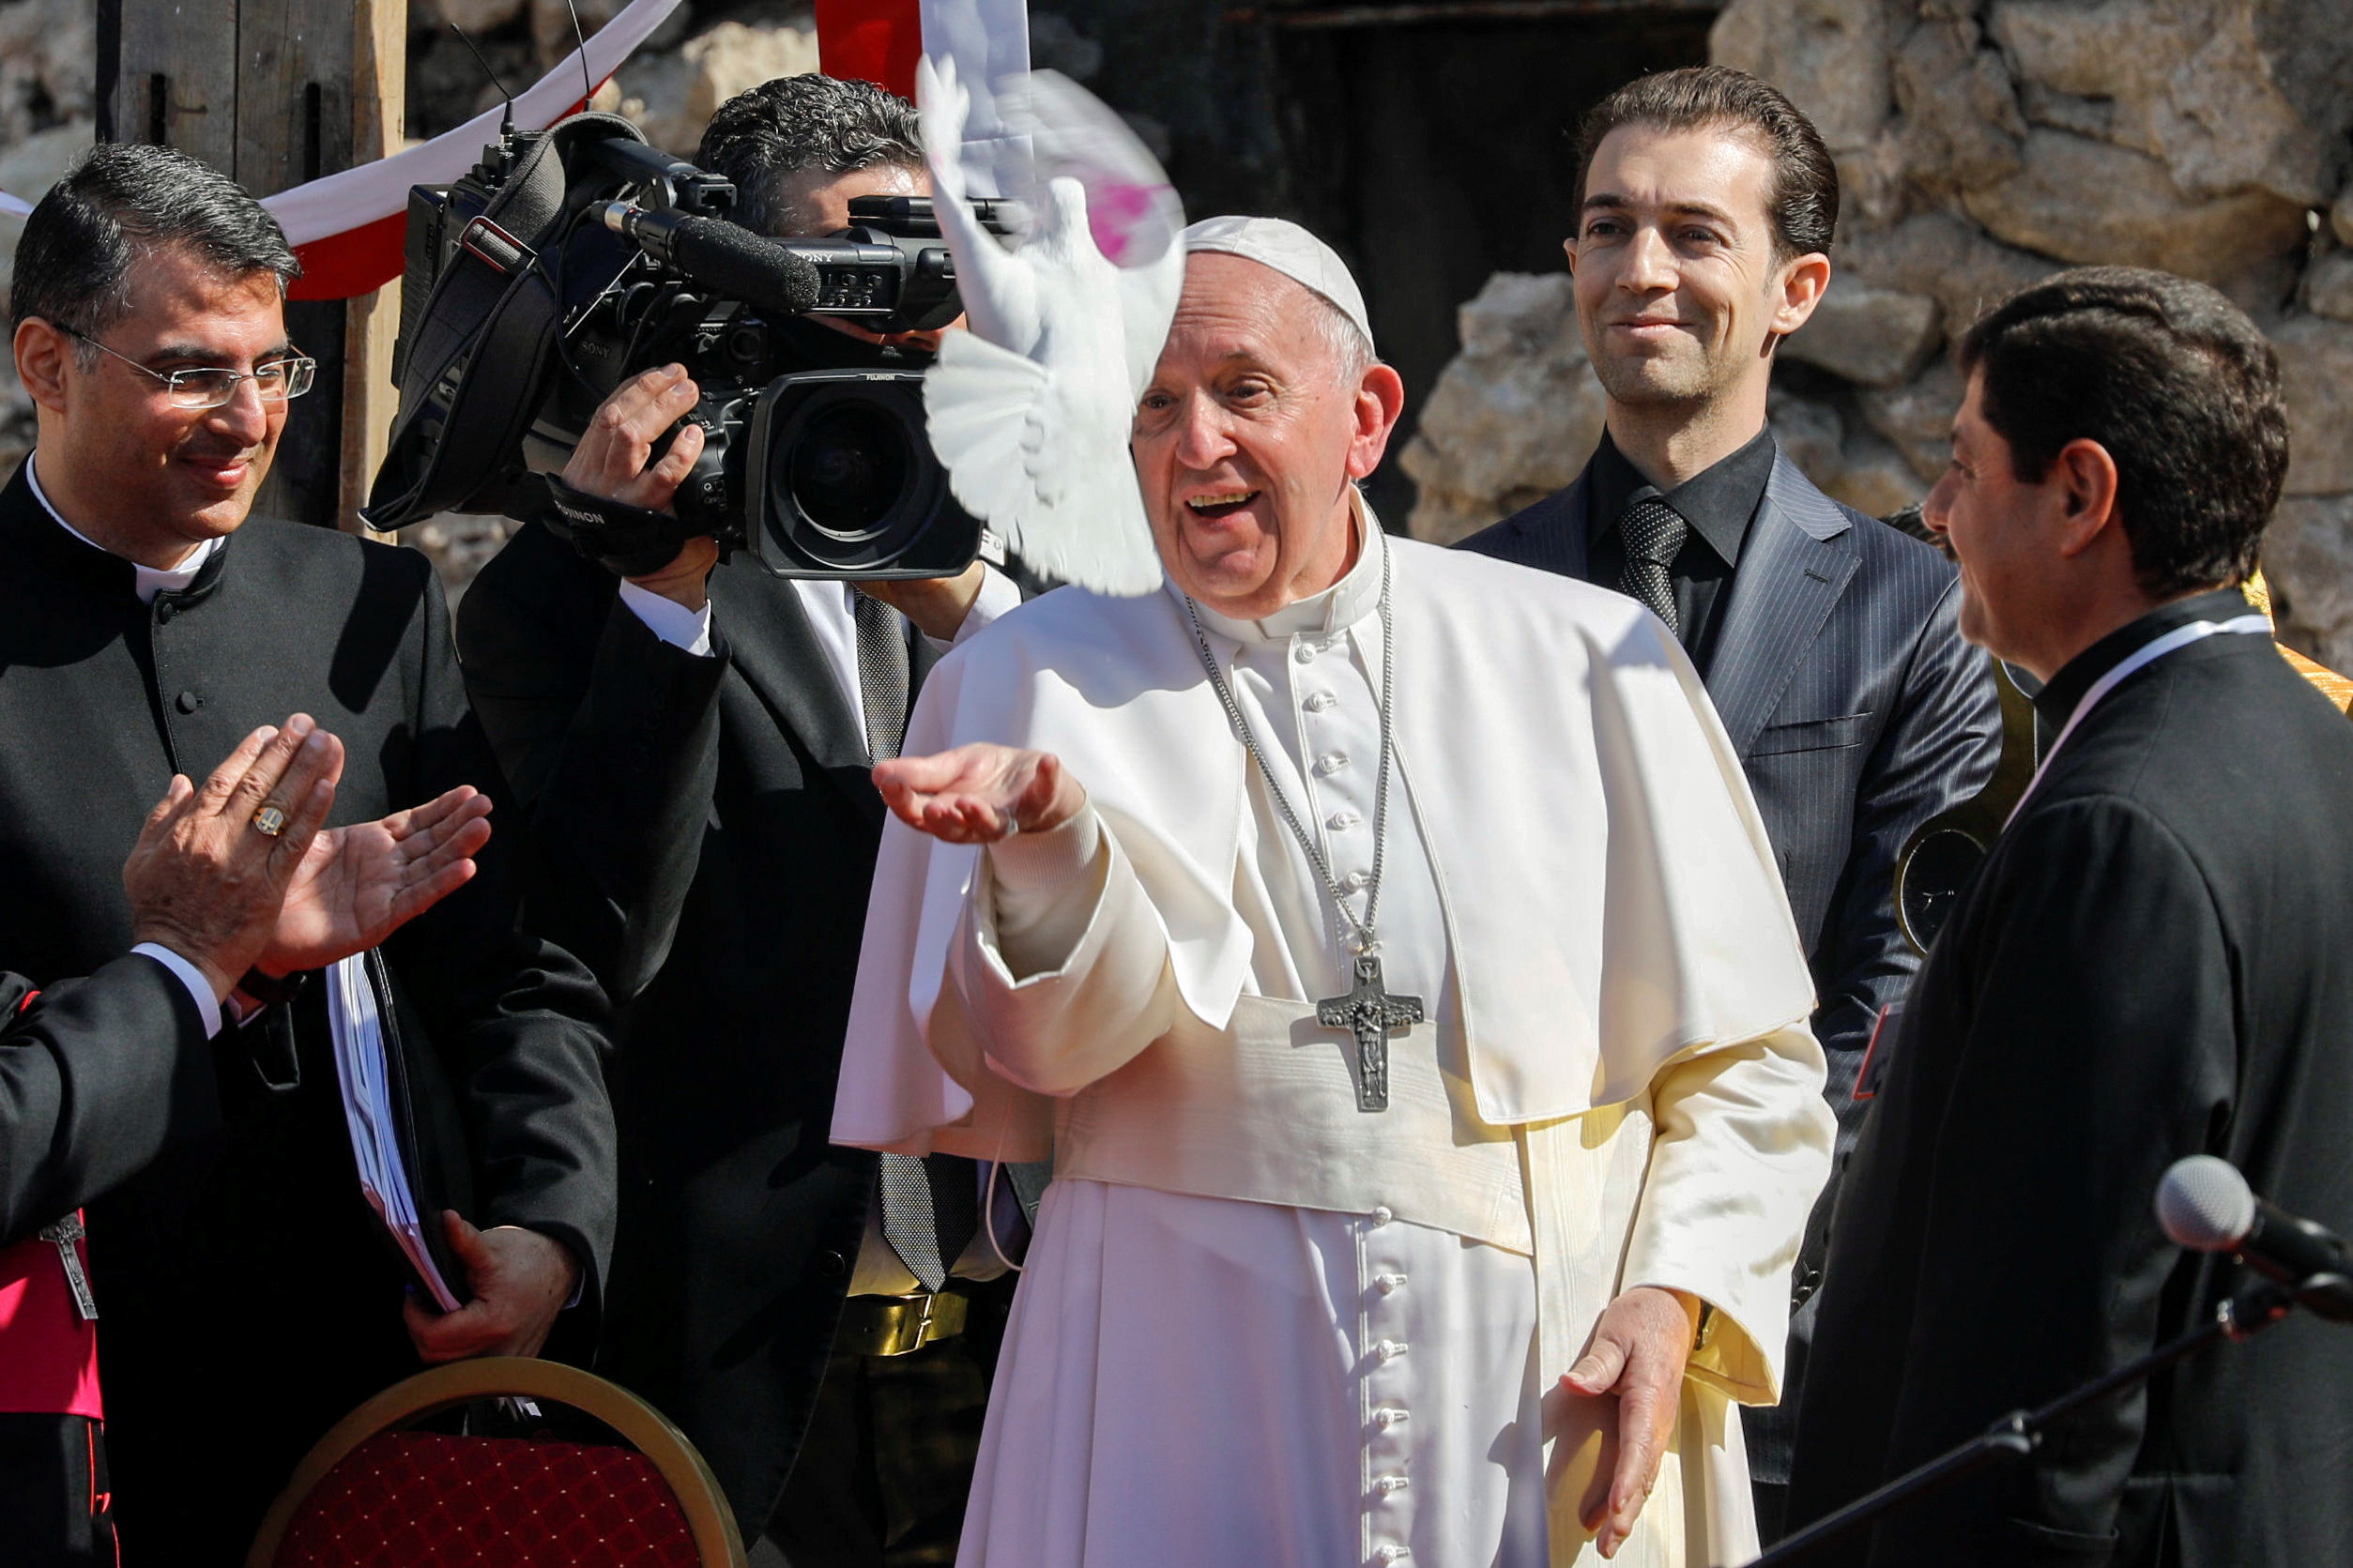 El papa Francisco rezó por las “víctimas de la guerra” en Mosul, devastada por el Estado Islámico